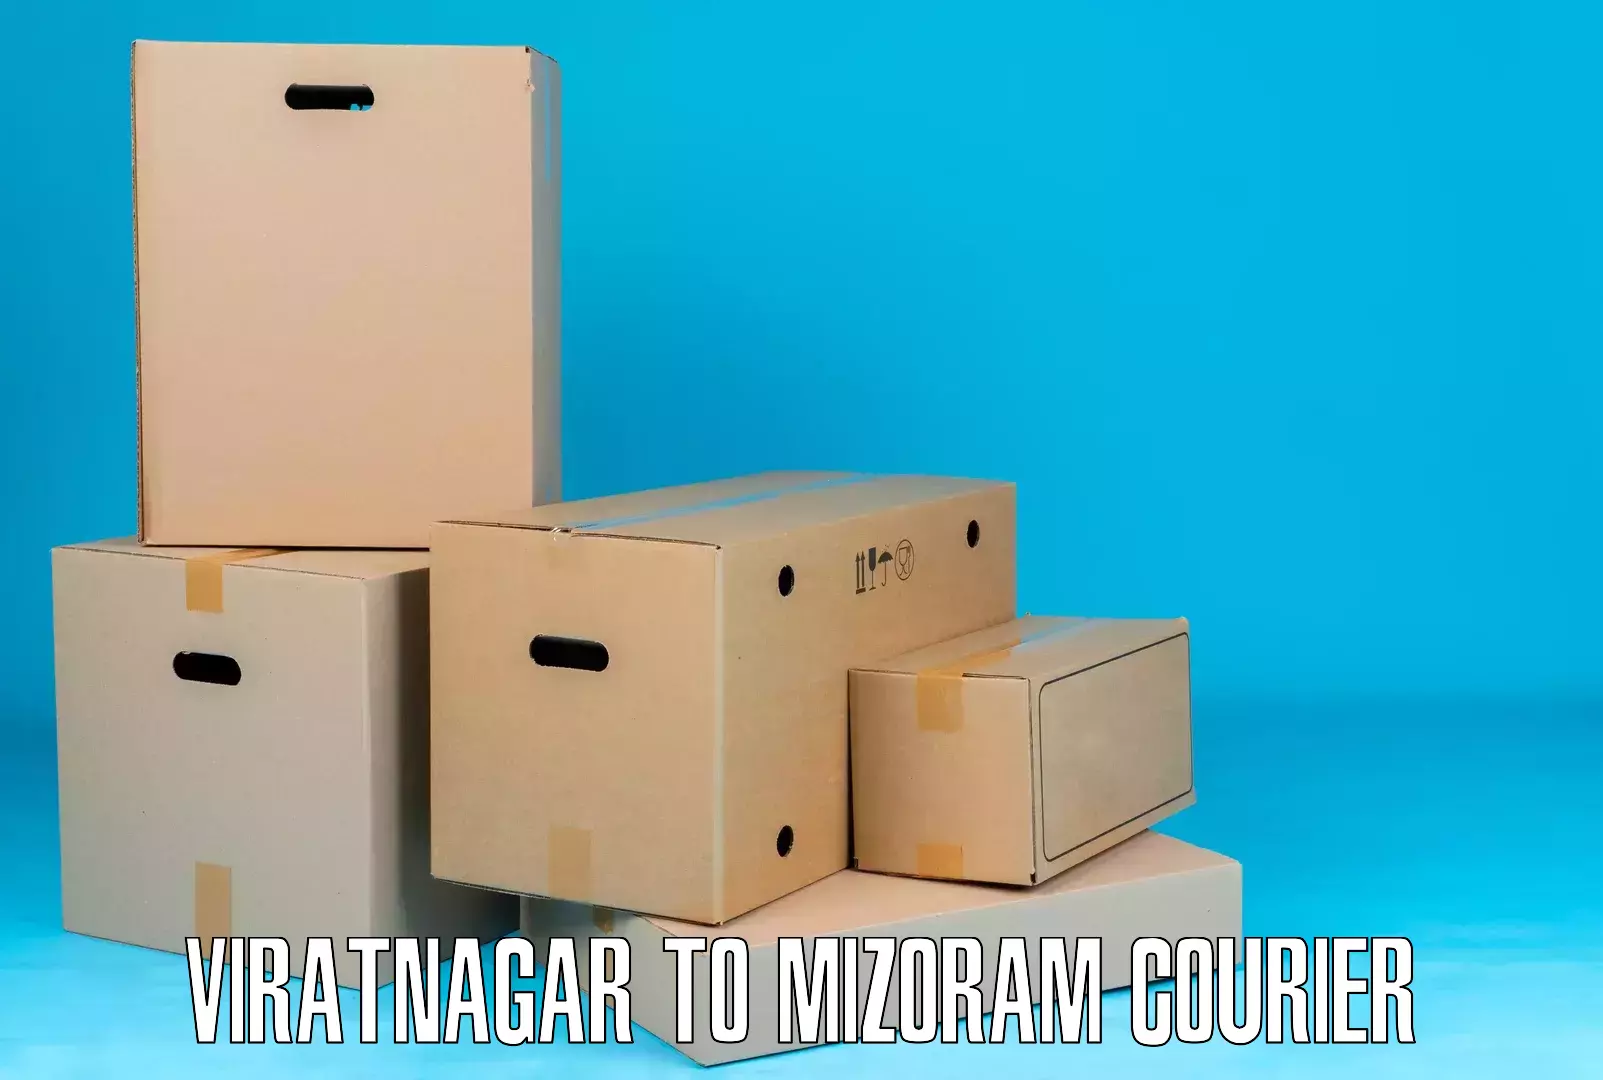 Next-generation courier services Viratnagar to Darlawn